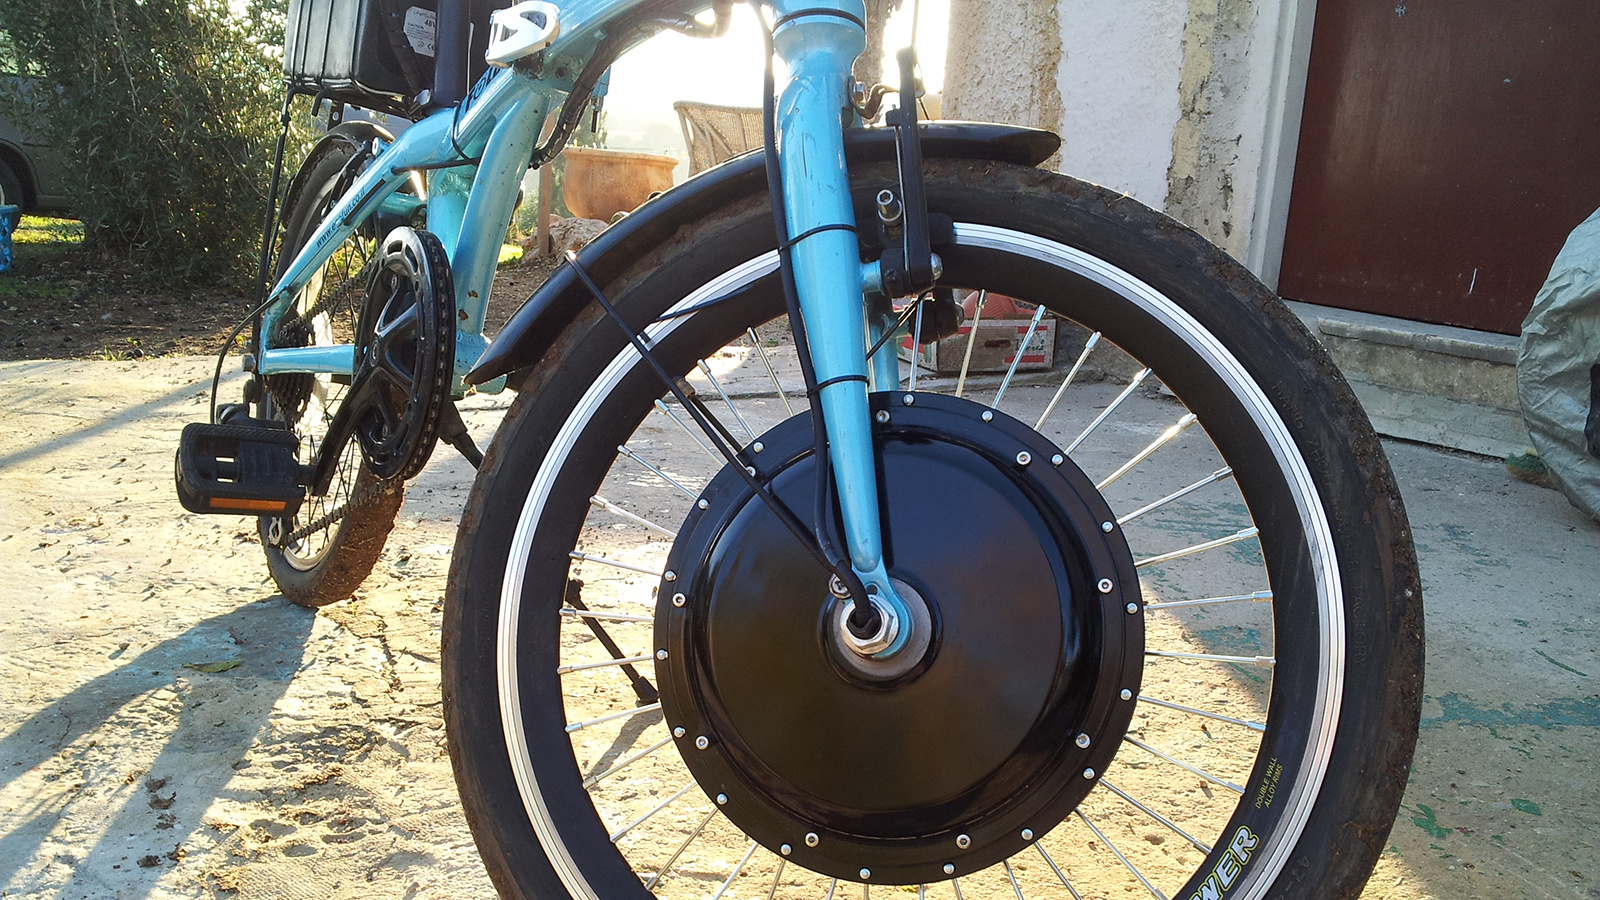 אופניים חשמליים (צילום: Ilan.neworld, מתוך ויקימדיה קומונס).